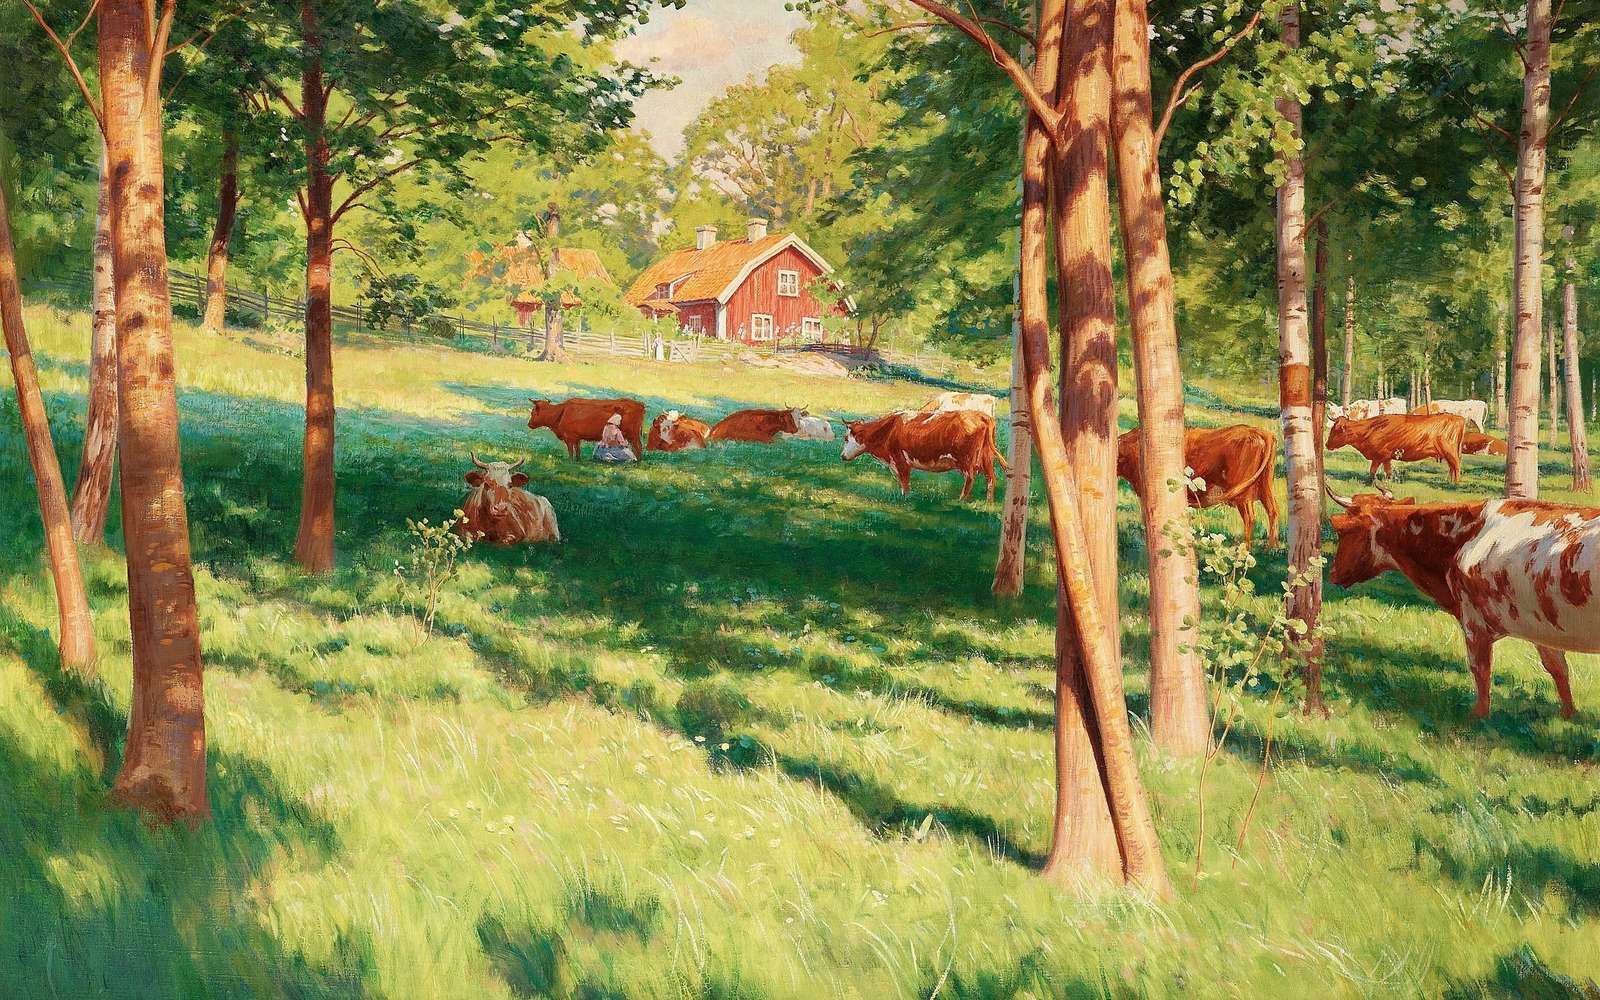 Koeien in een weiland. online puzzel